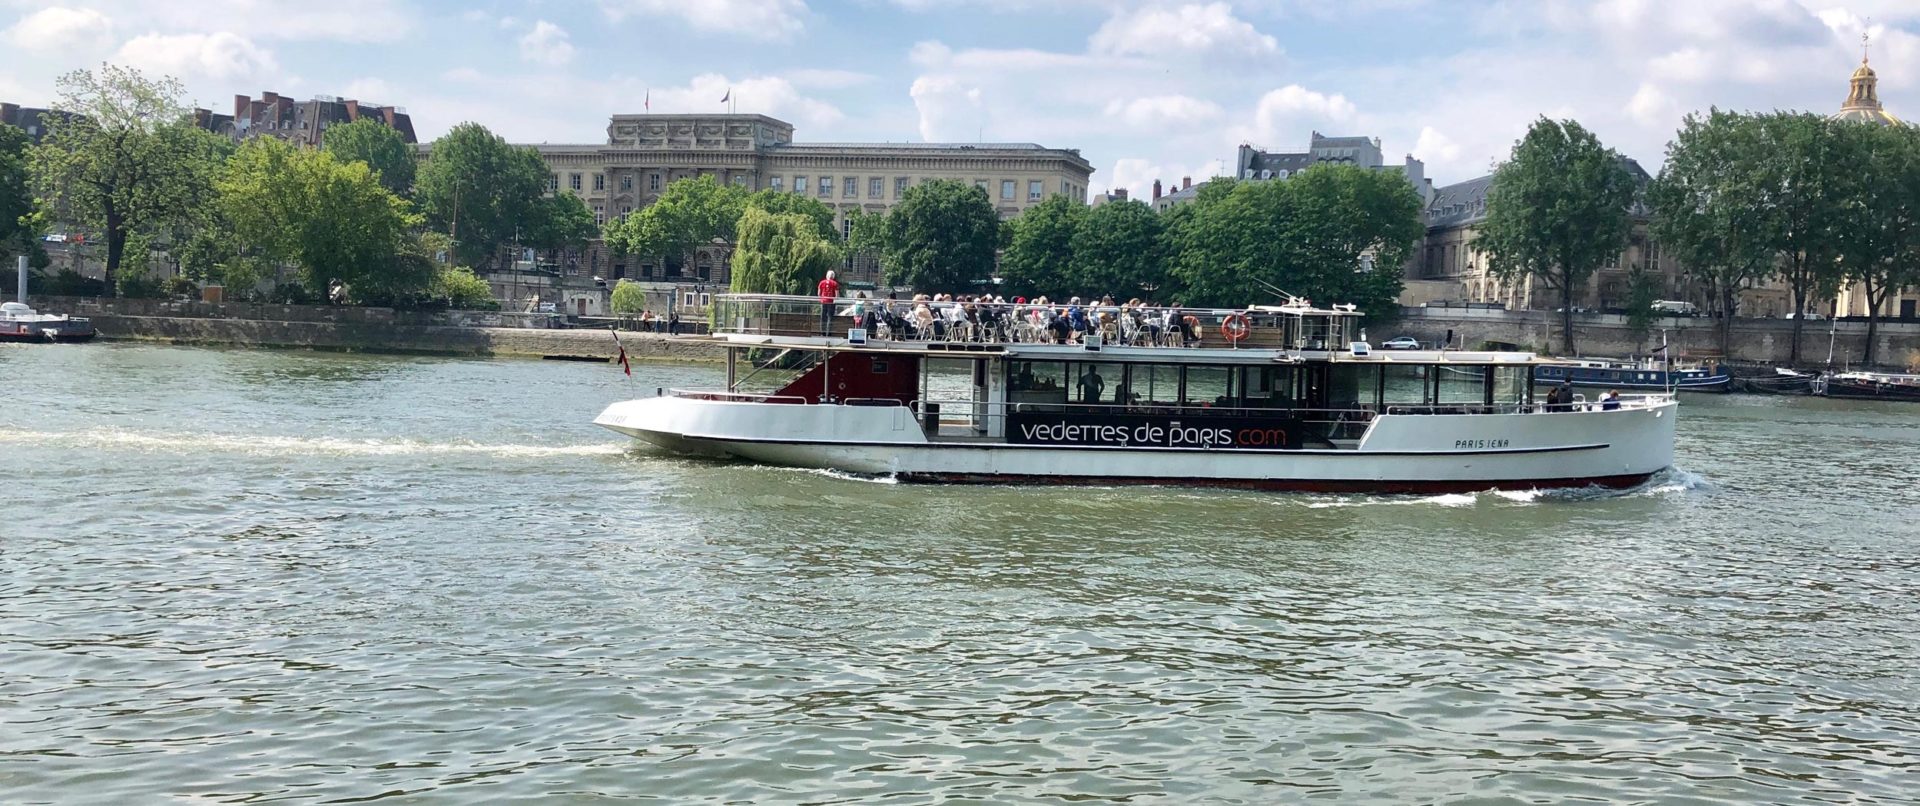 seine-river-cruise-paris-family-tours-france-vedettes